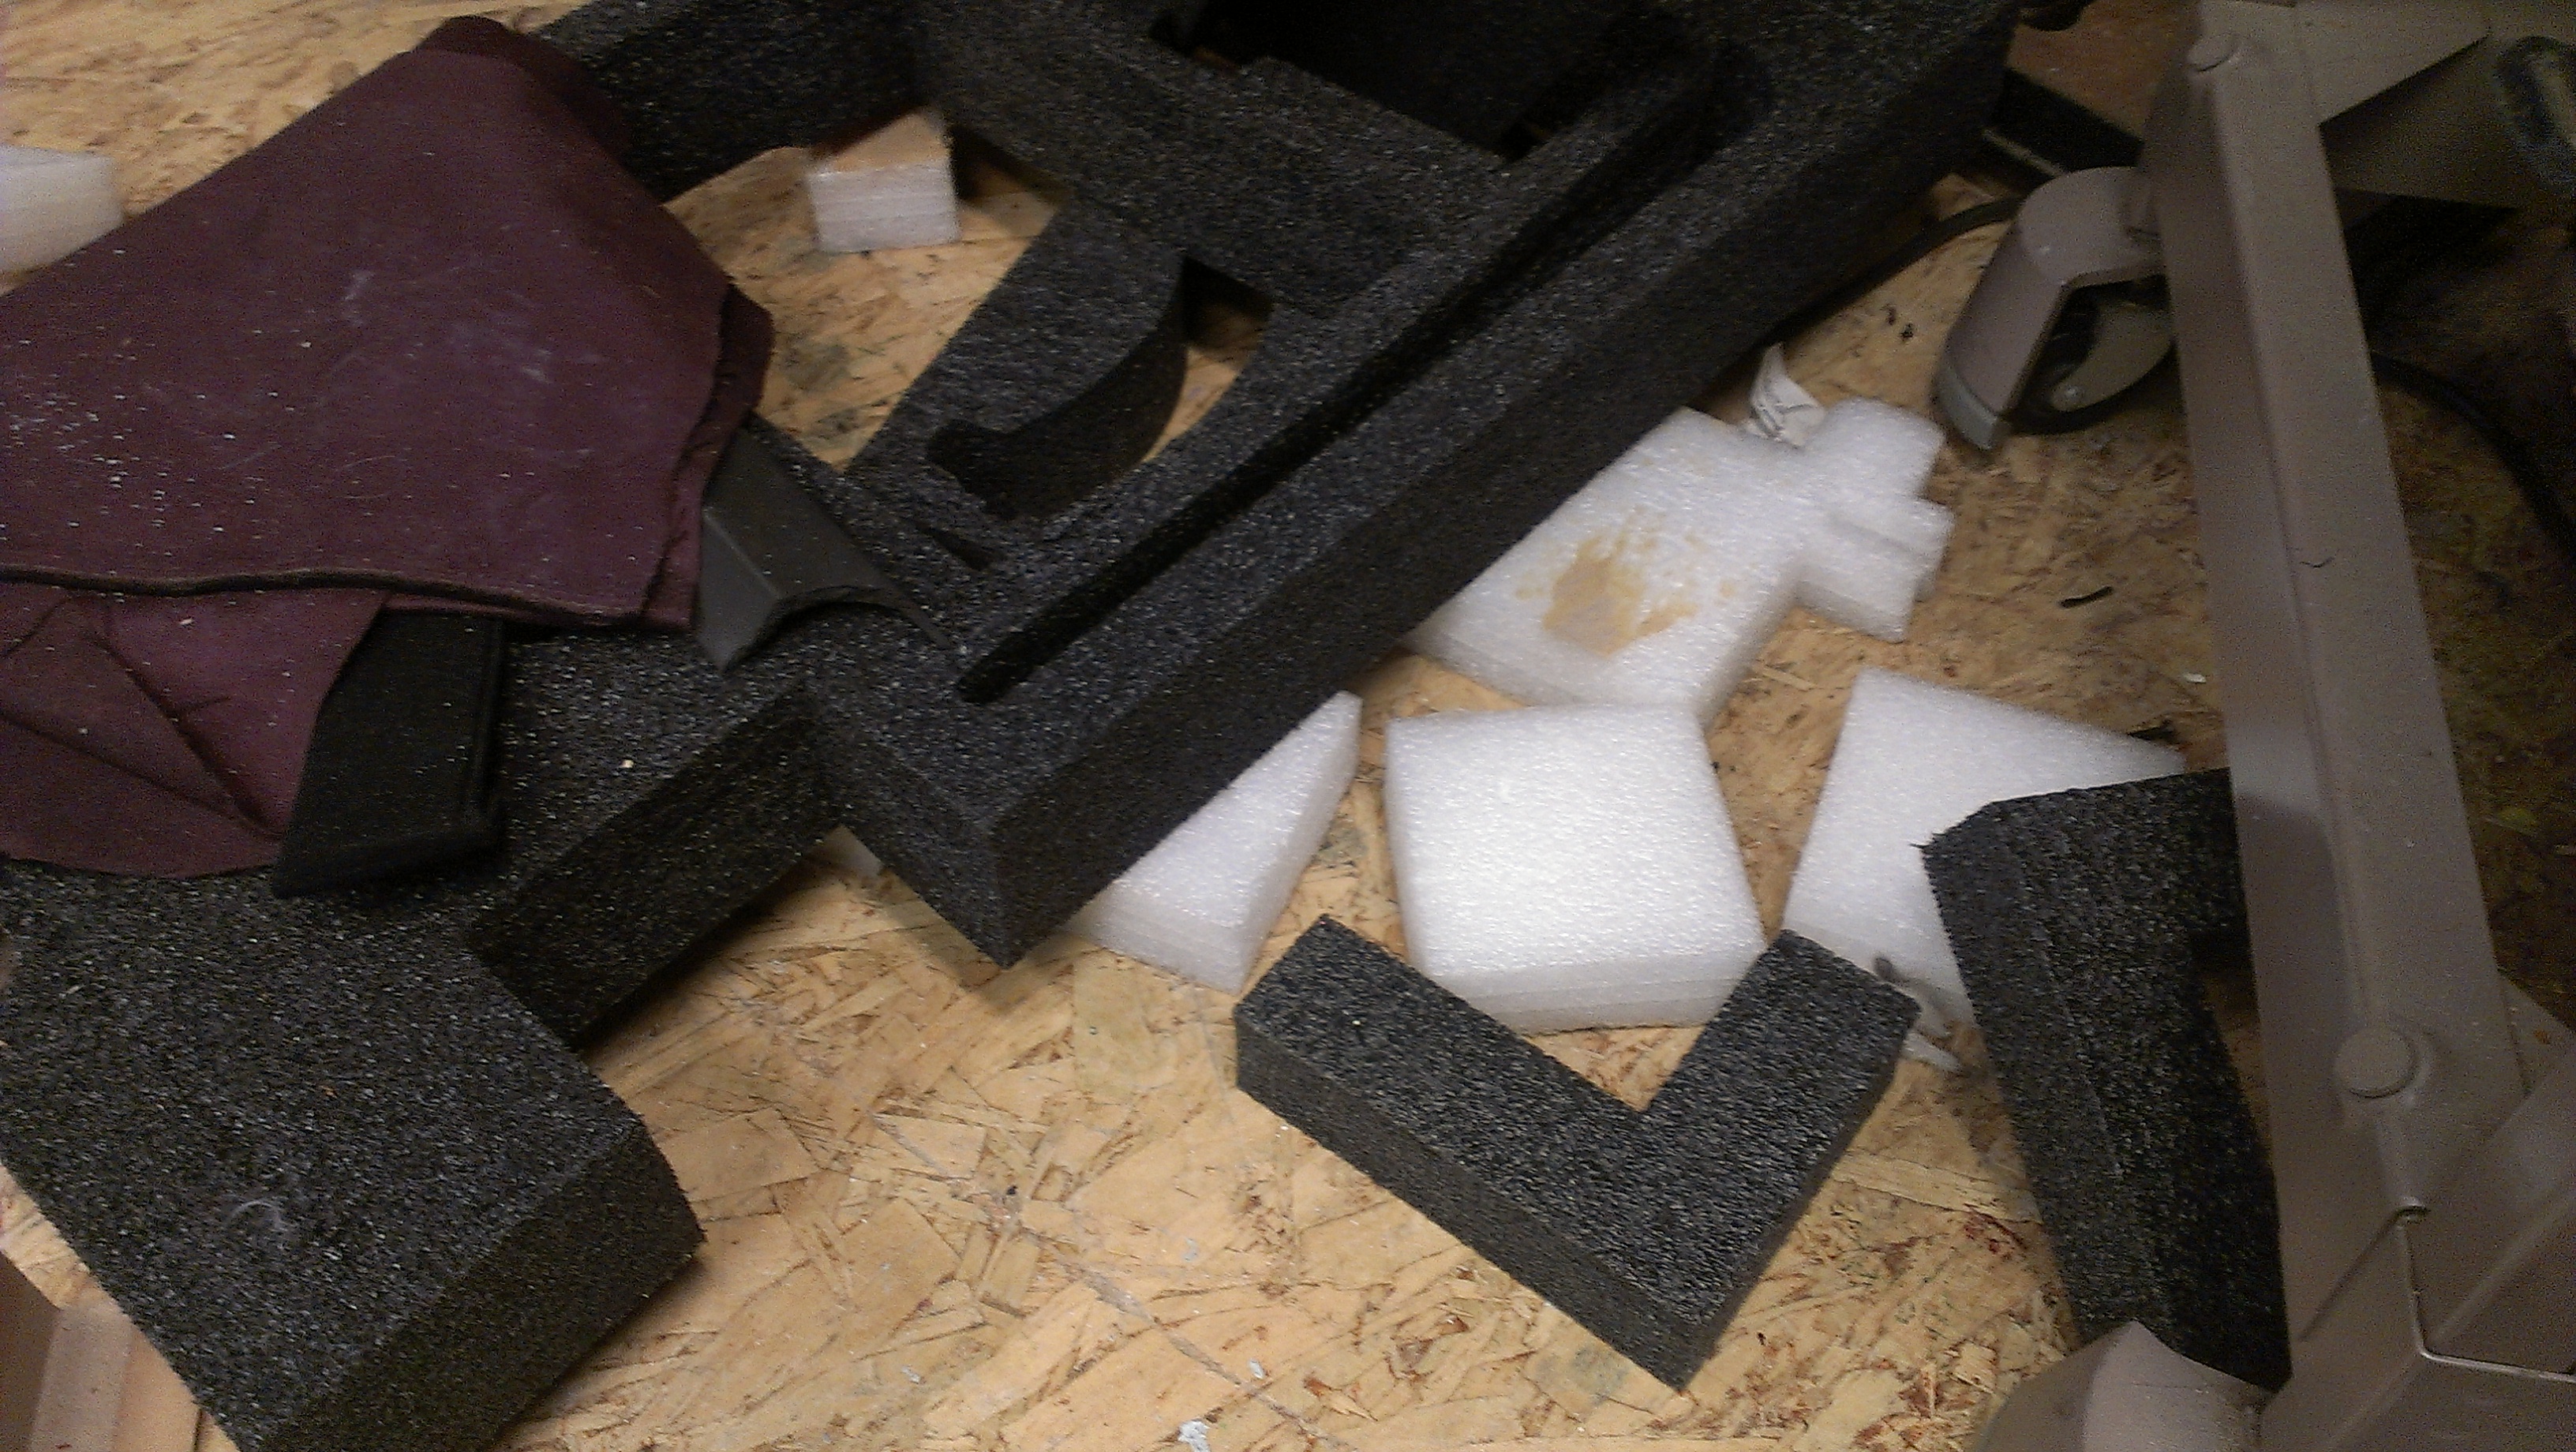 Camera hack pack foam scraps.jpg